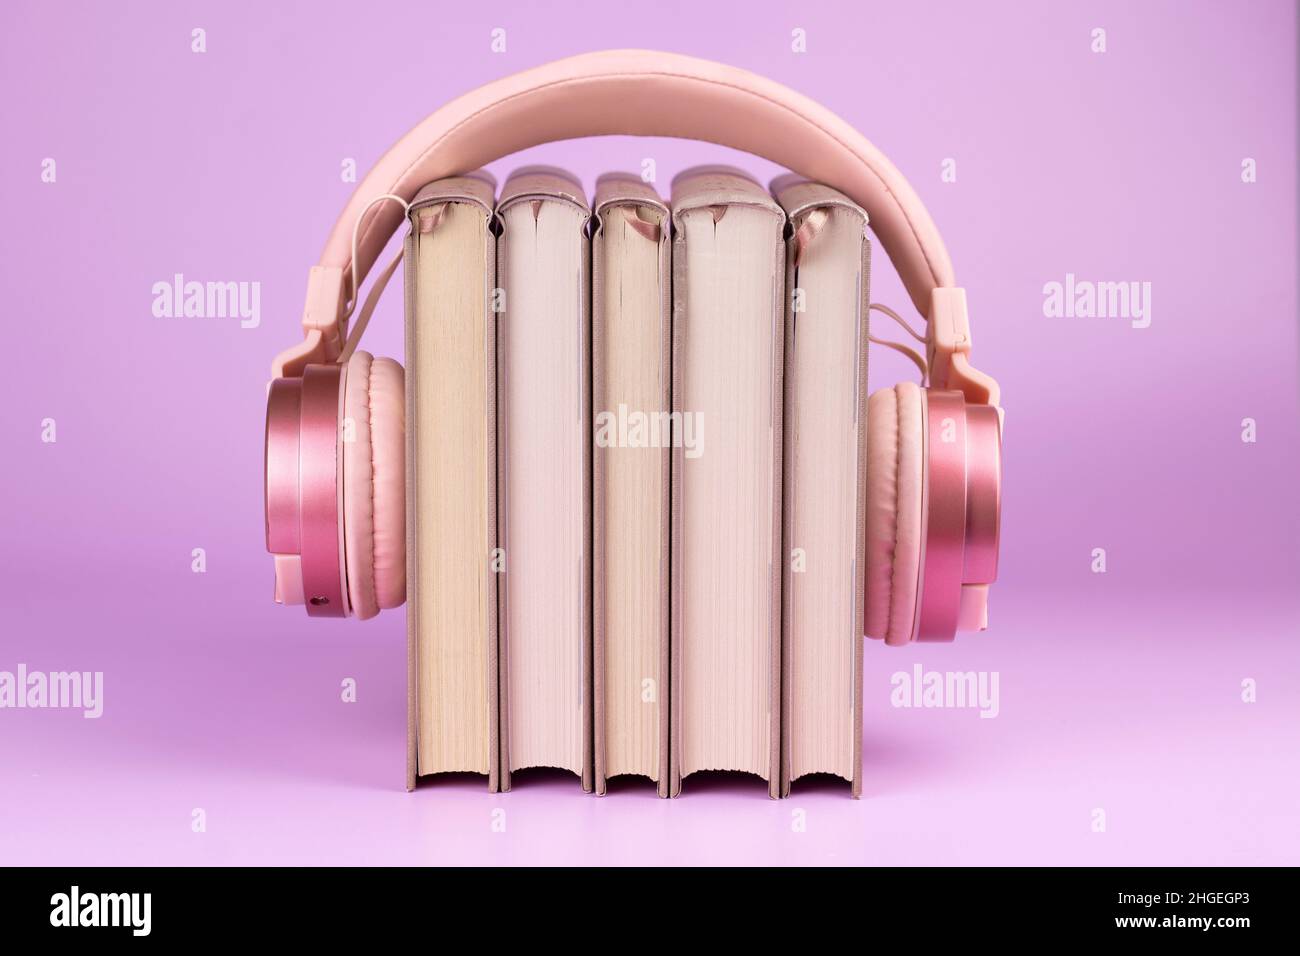 Kopfhörer und Bücherstapel auf rosa Hintergrund. Konzept des Hörbuchs. Stockfoto